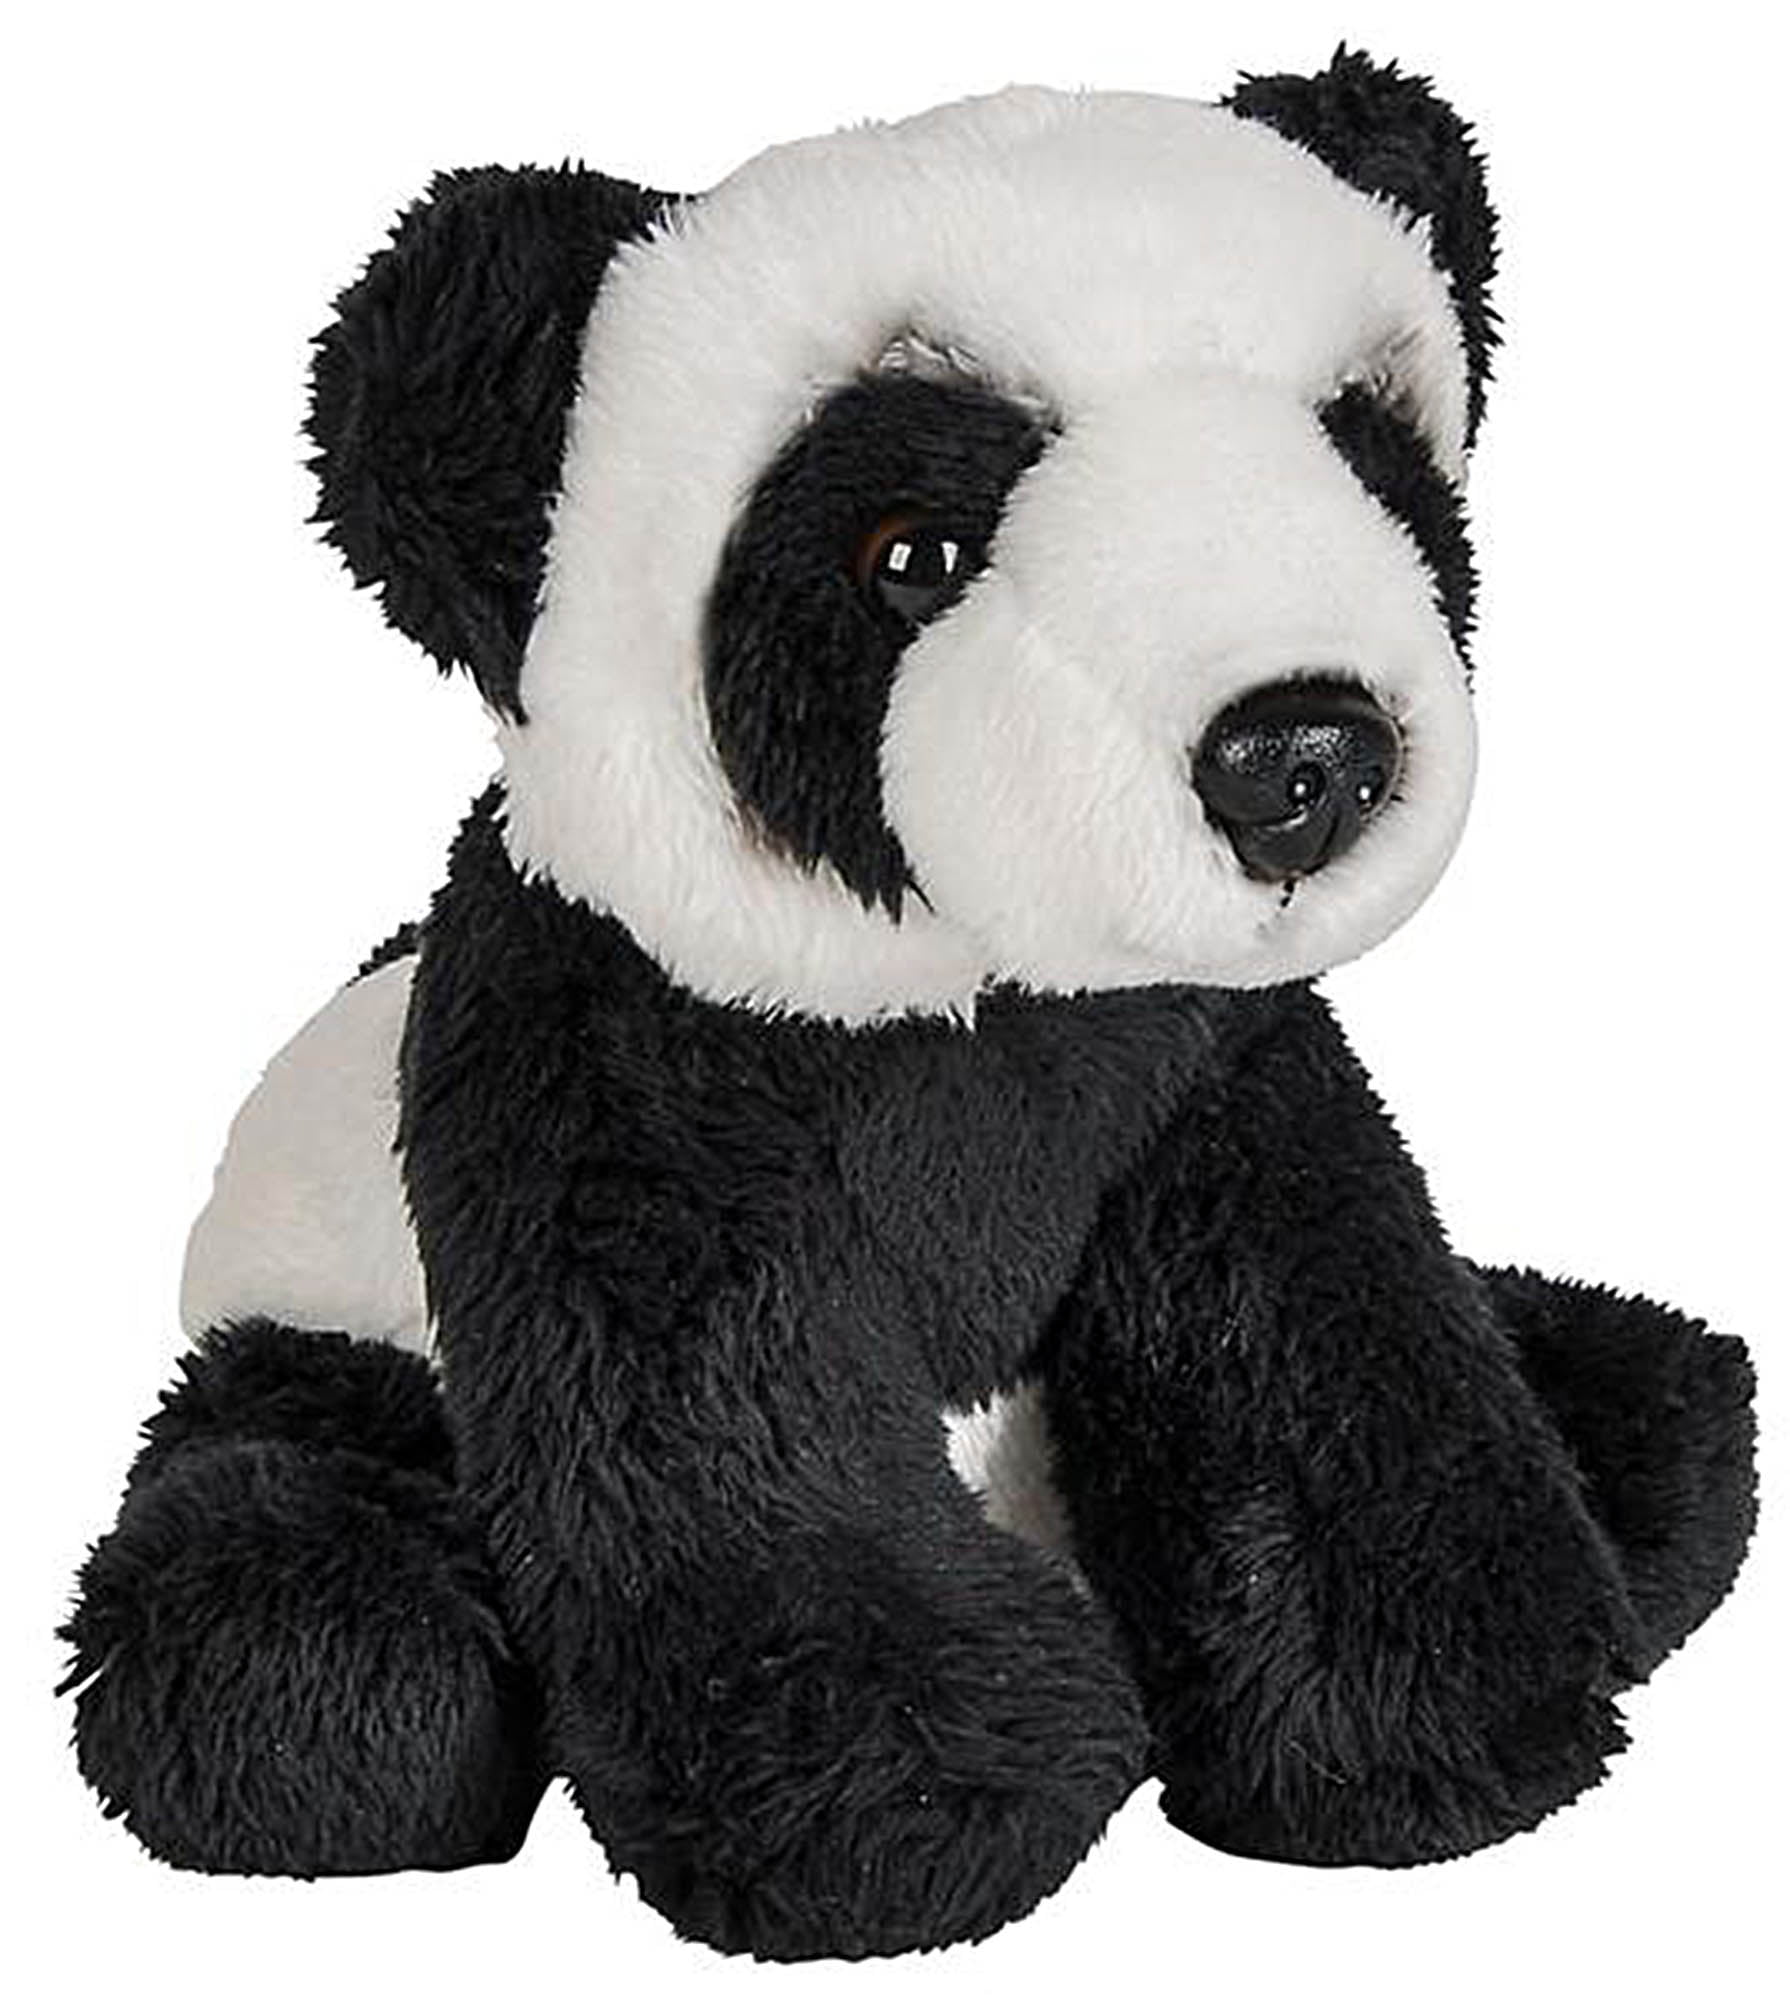 Zoo Animal NEW Panda Bear Soft Plush Stuff Toy 7" Sitting Age 3 